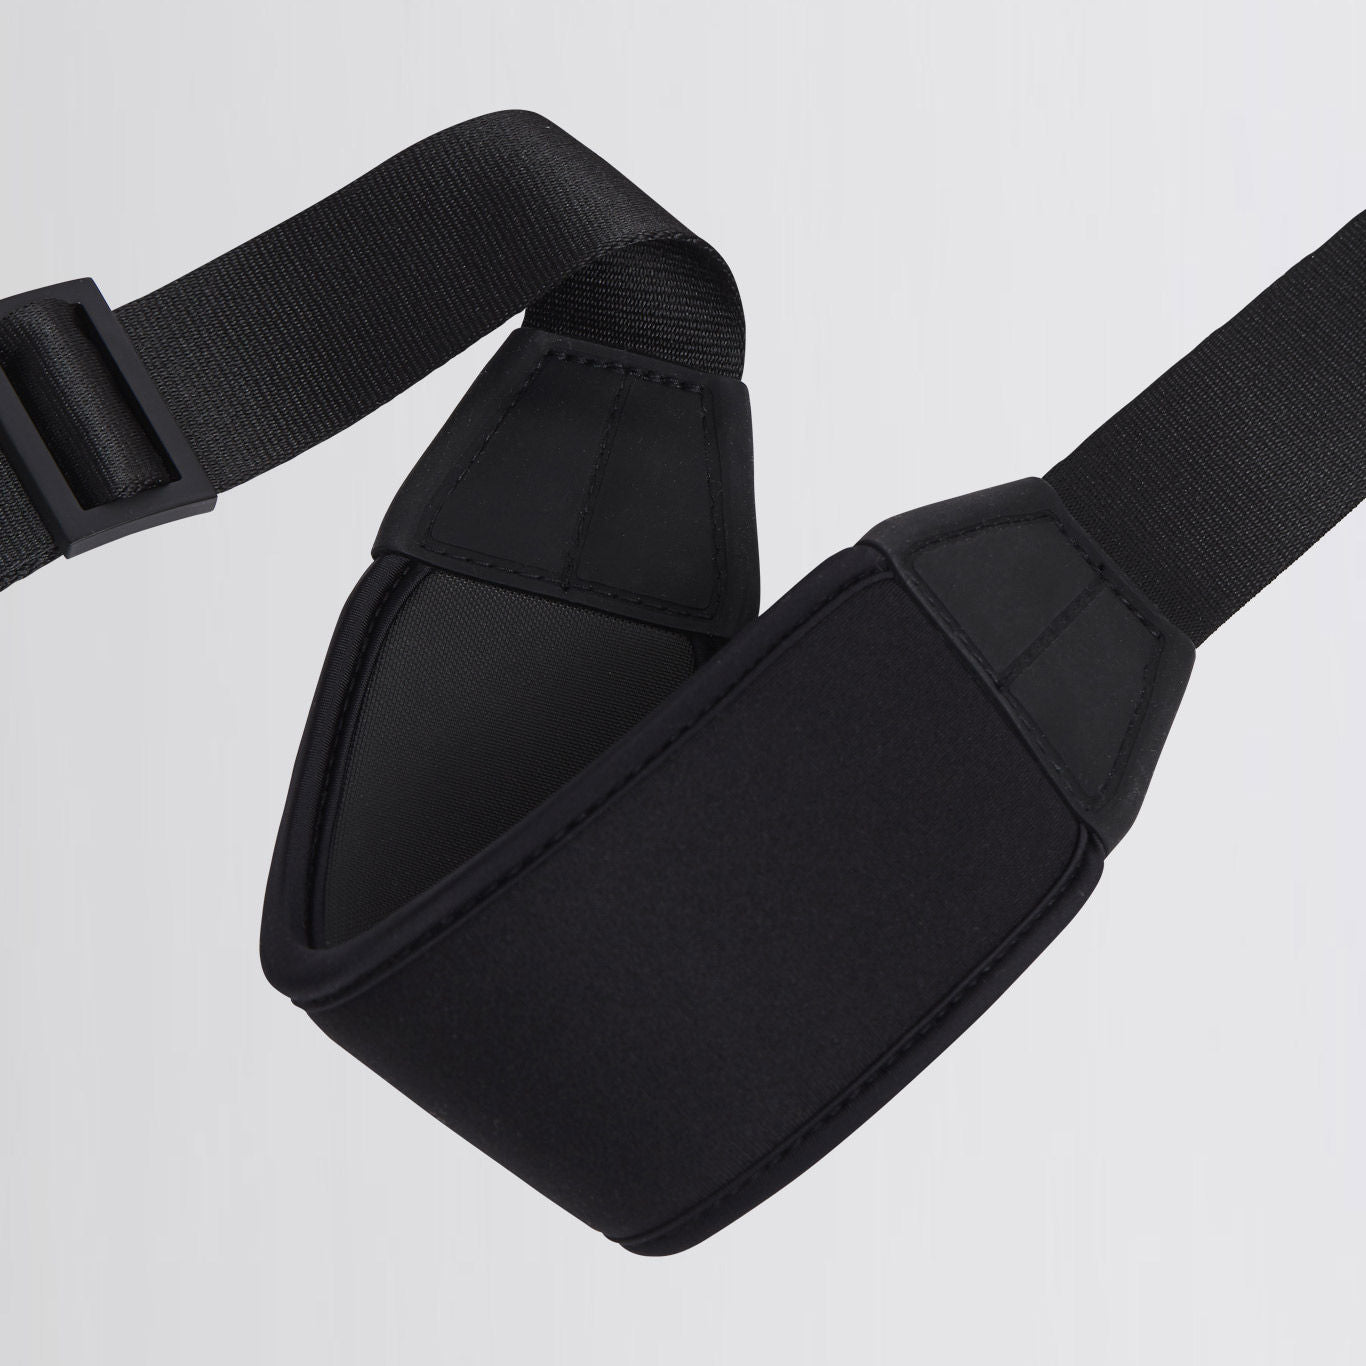 Troubadour fabric shoulder strap, black